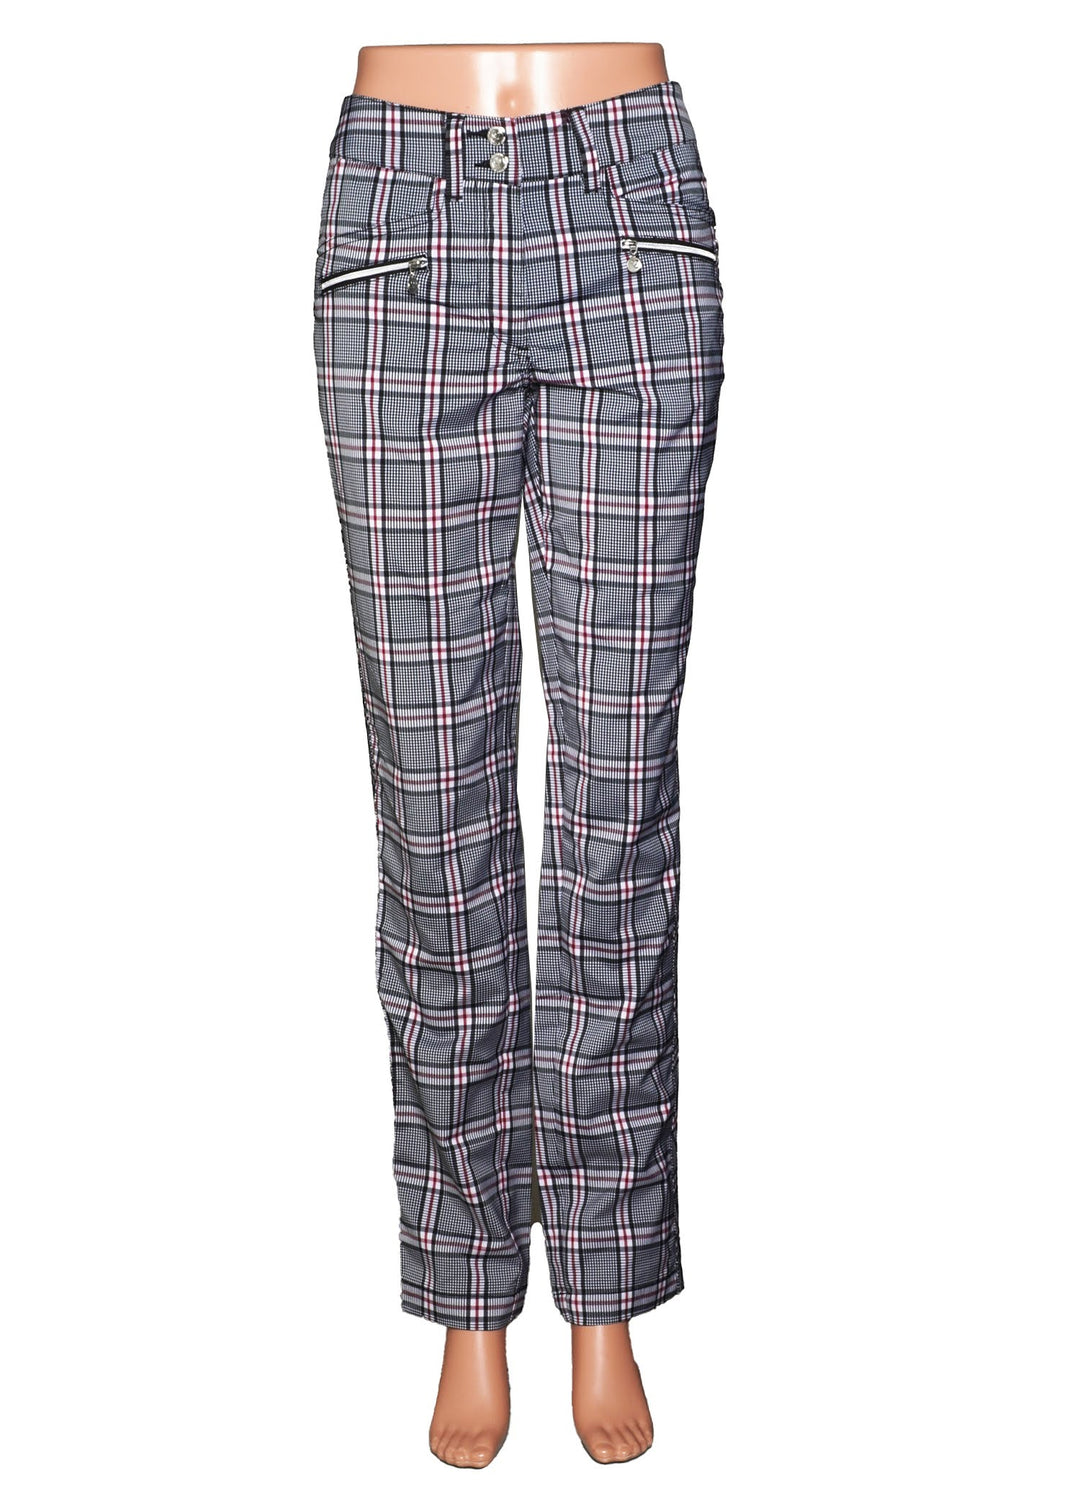 Daily Sports Cateya Golf Pants - Classic Black Plaid - Size 2 - Skorzie